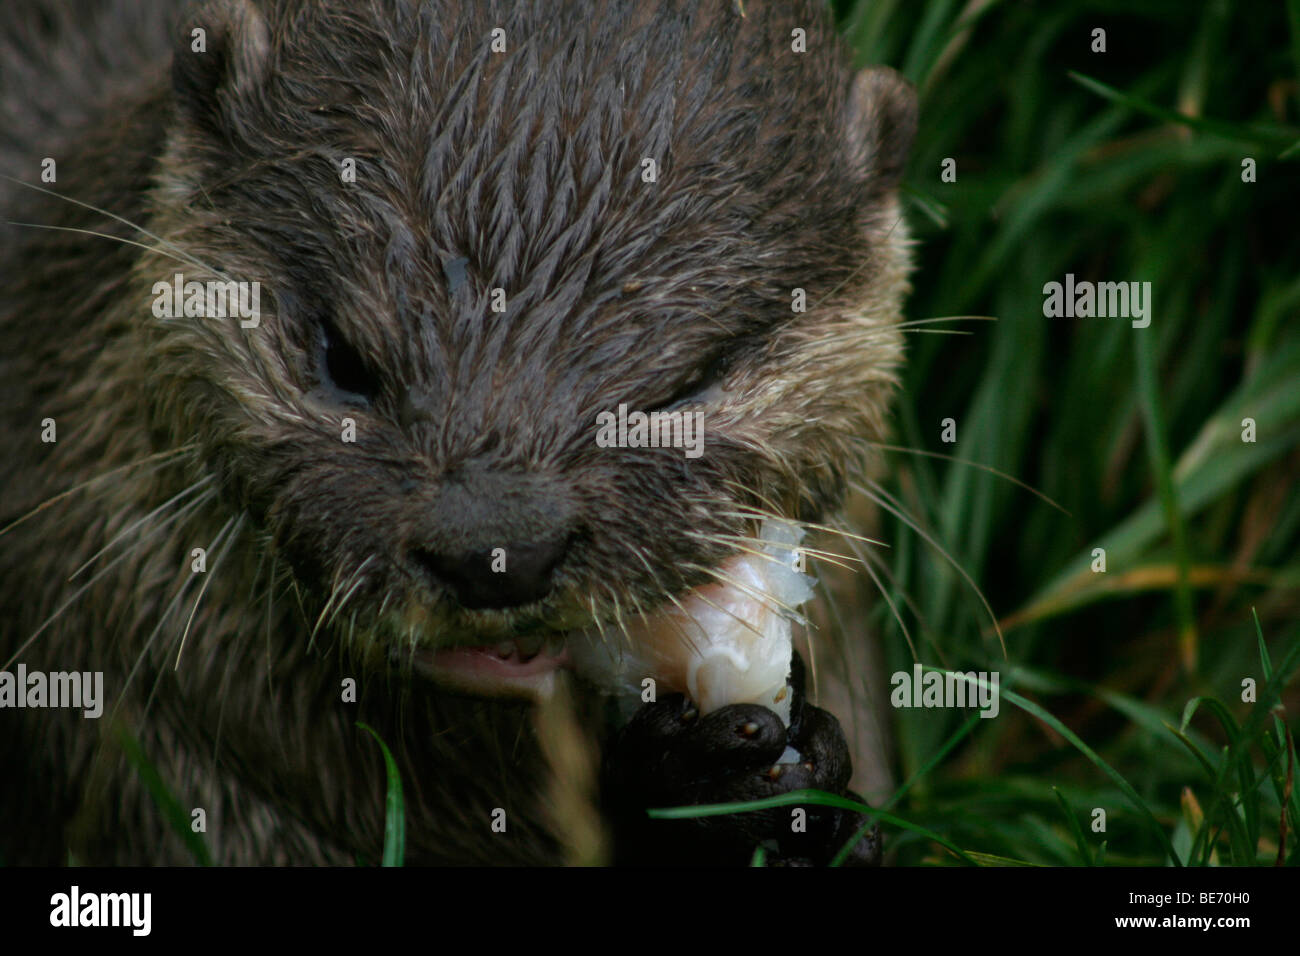 Asian small artigliato otter mangiare pesce, close up Foto Stock